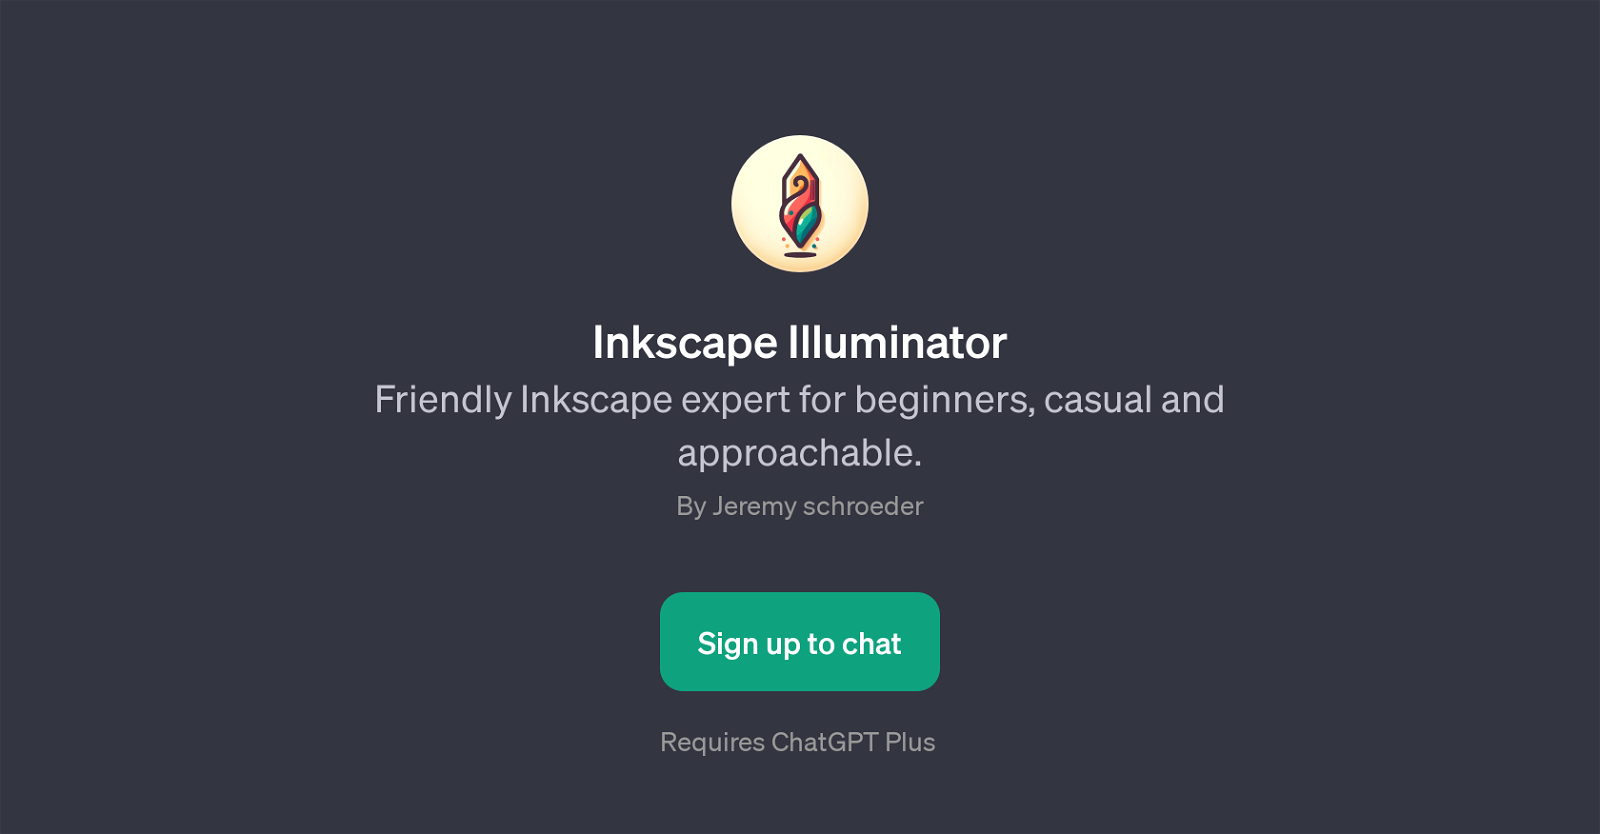 Inkscape Illuminator website